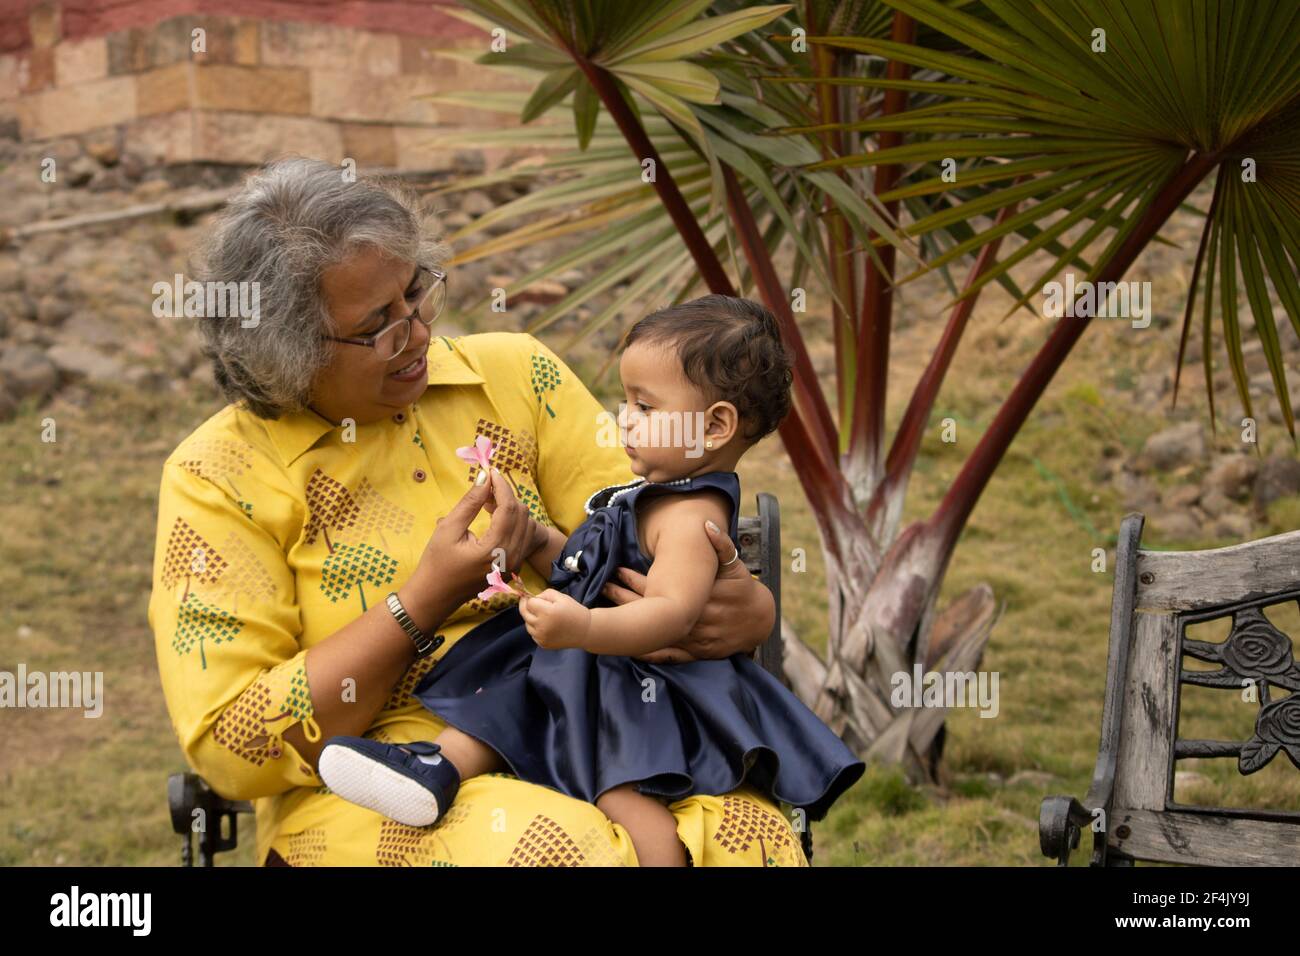 Des moments heureux avec une grande-mère, une femme indienne ou asiatique passe du temps de qualité avec sa petite fille dans le jardin. Banque D'Images